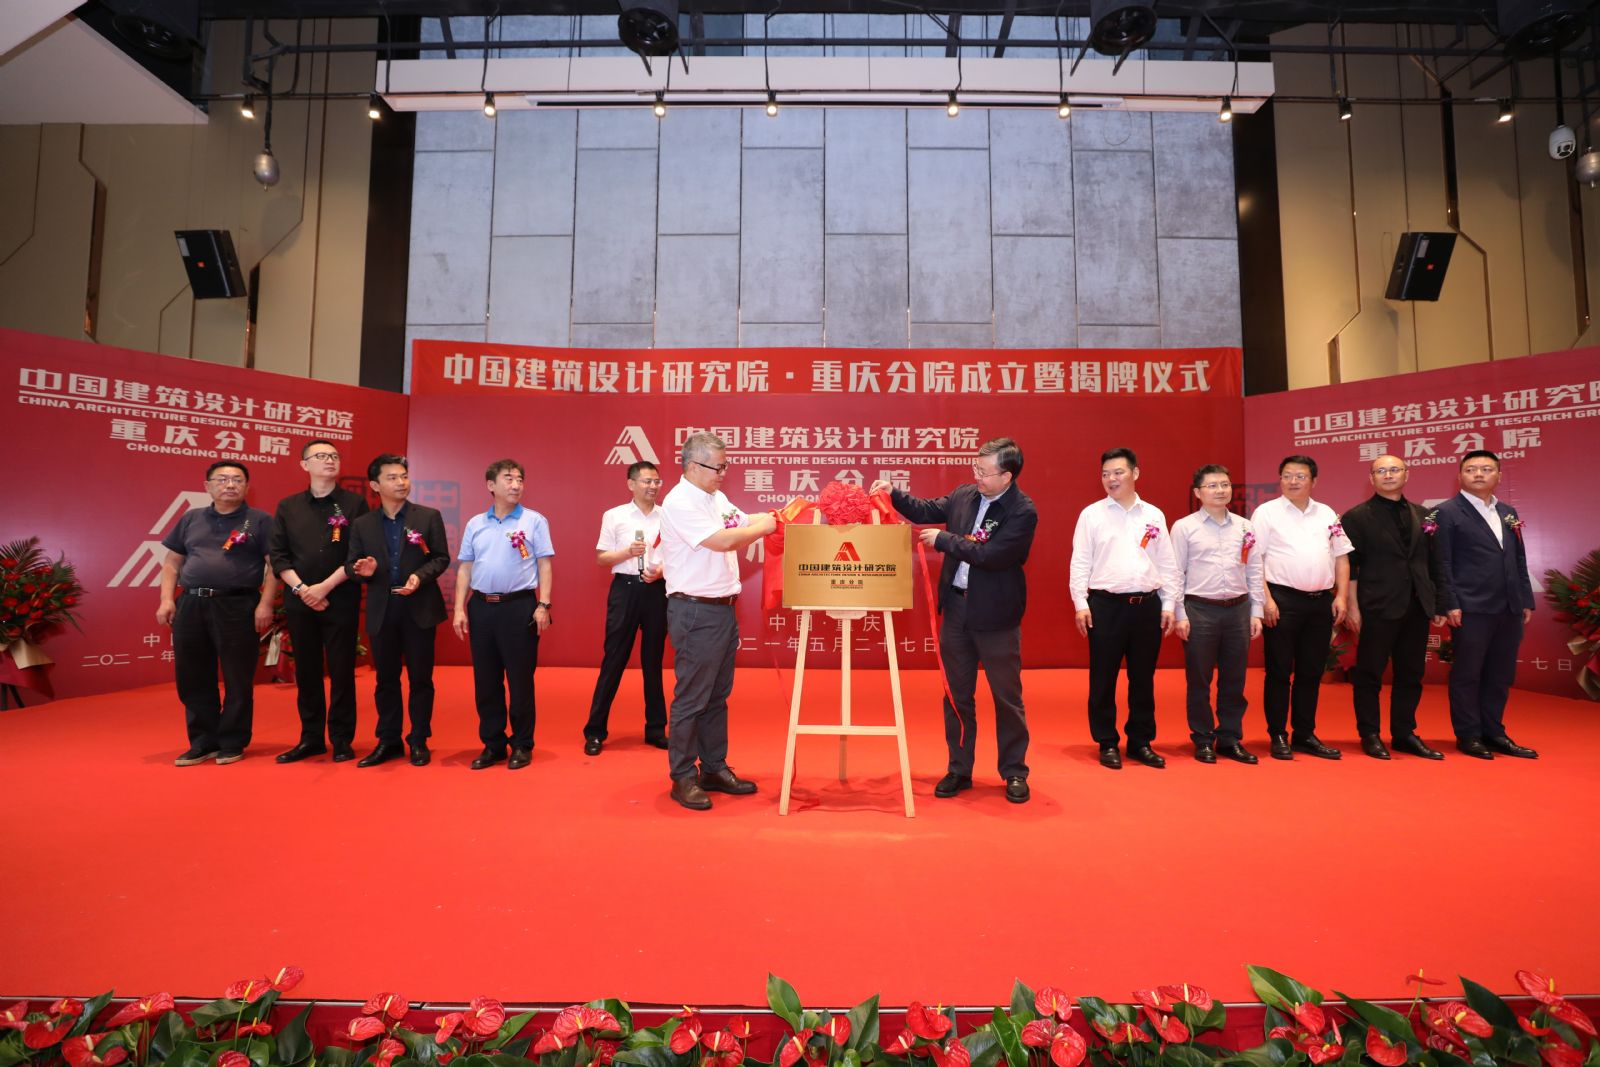 中國建筑設計研究院重慶分公司舉行成立儀式